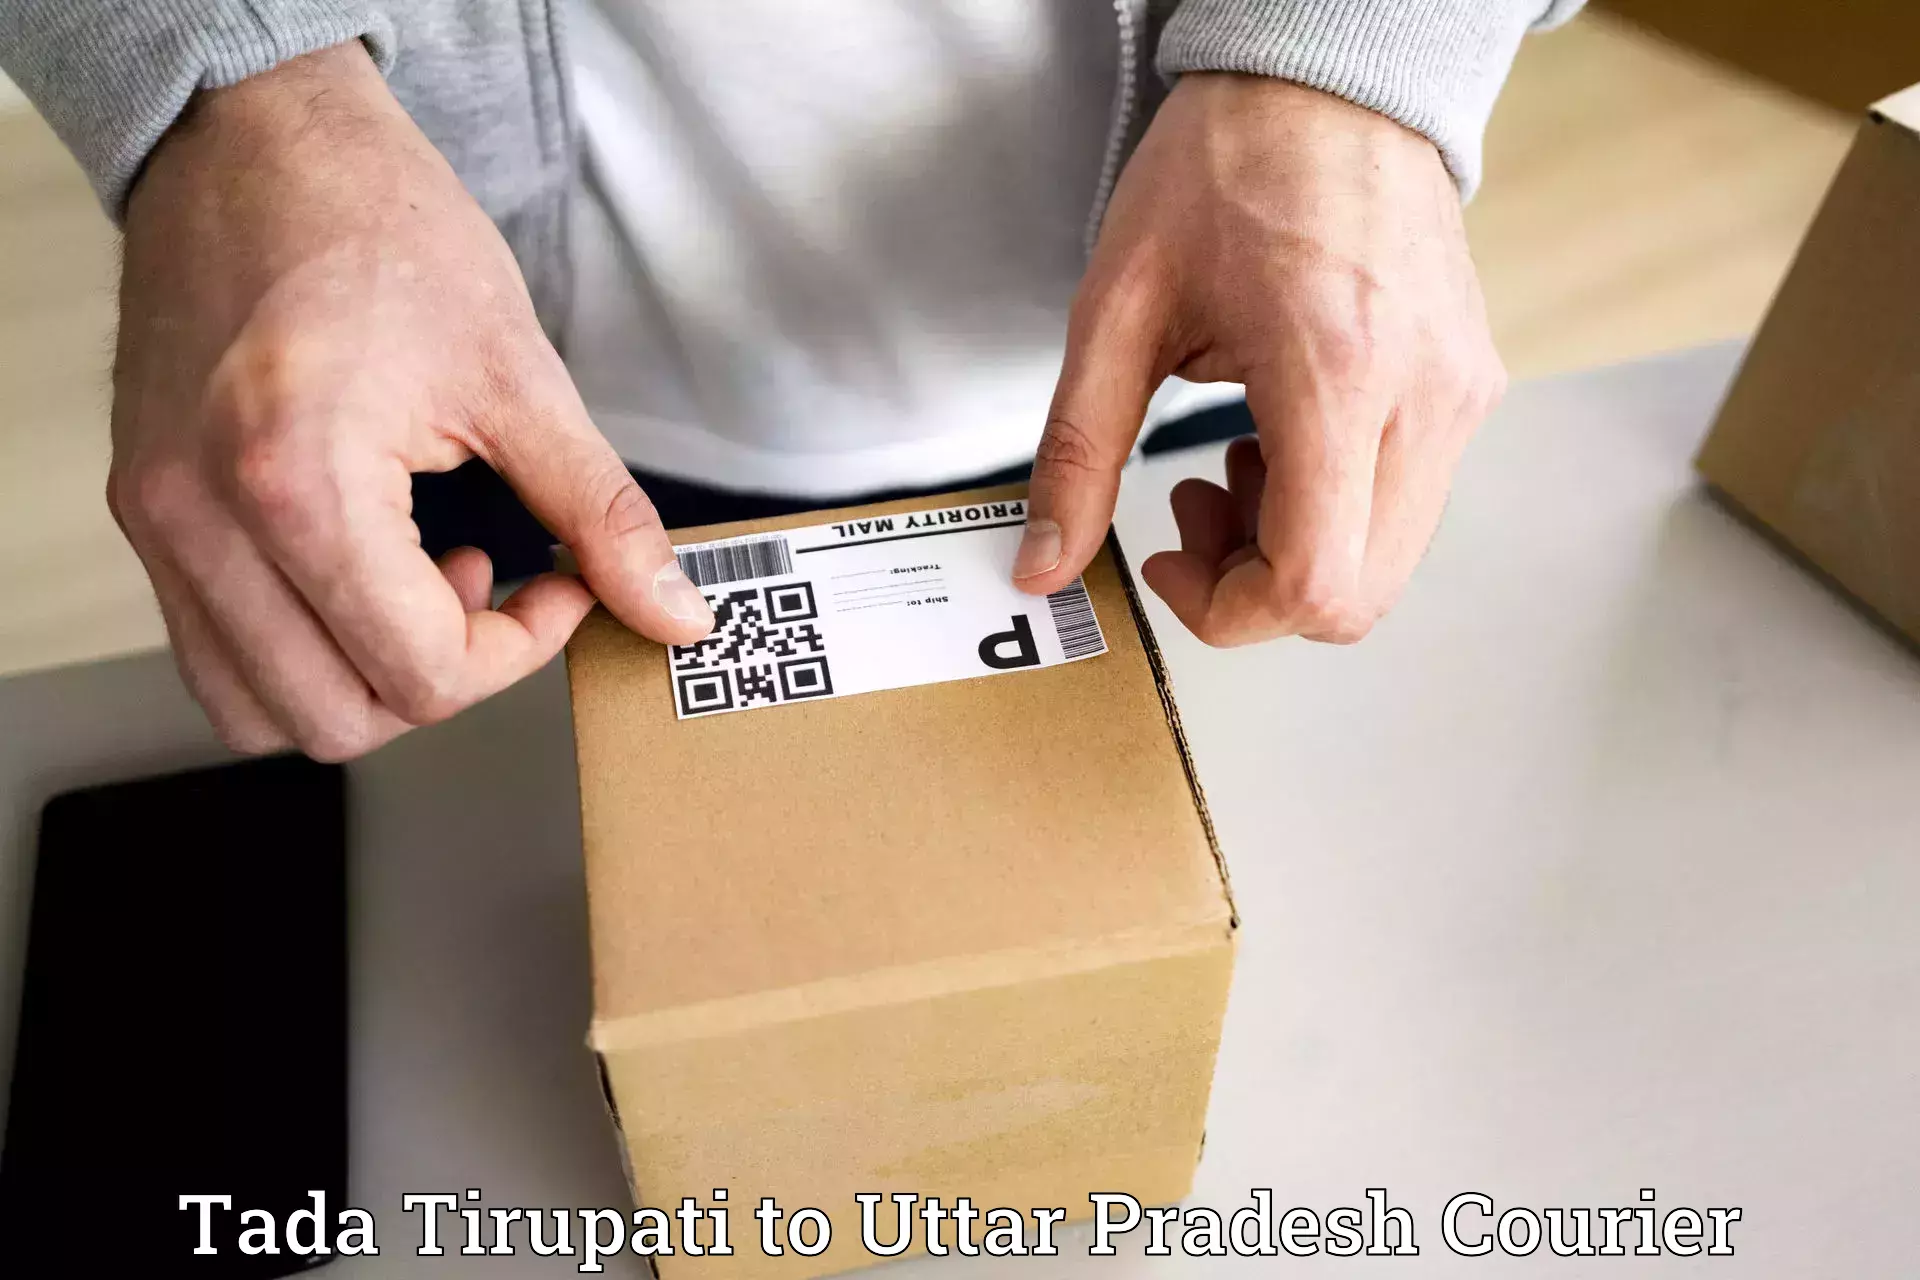 Package delivery network Tada Tirupati to Thakurdwara